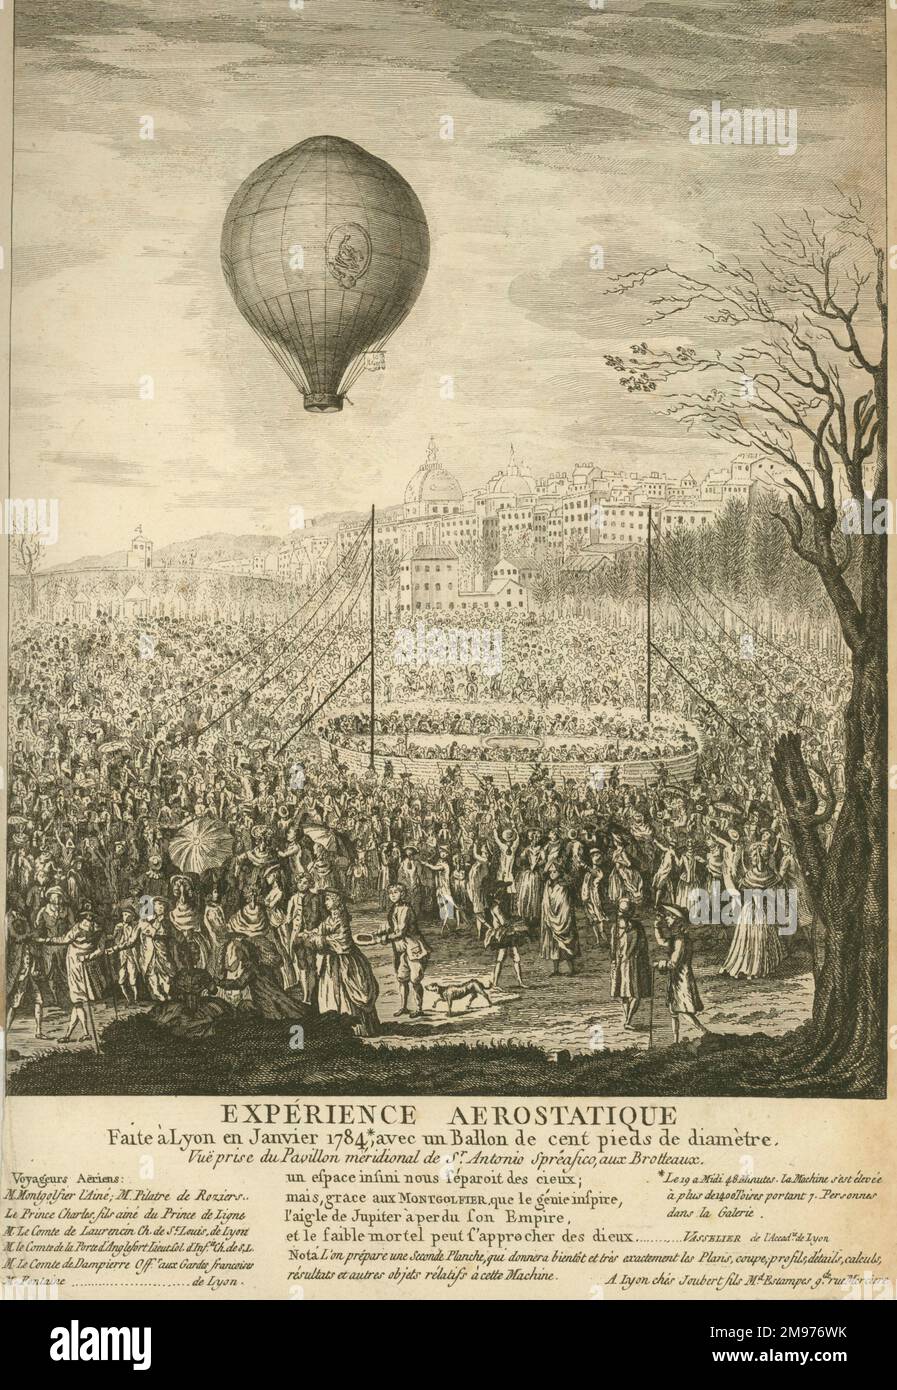 Plate showing “Expérience Aerostatique. Faite à Lyon Janvier 1784, avec un Ballon de cent pieds de diameter.” Stock Photo